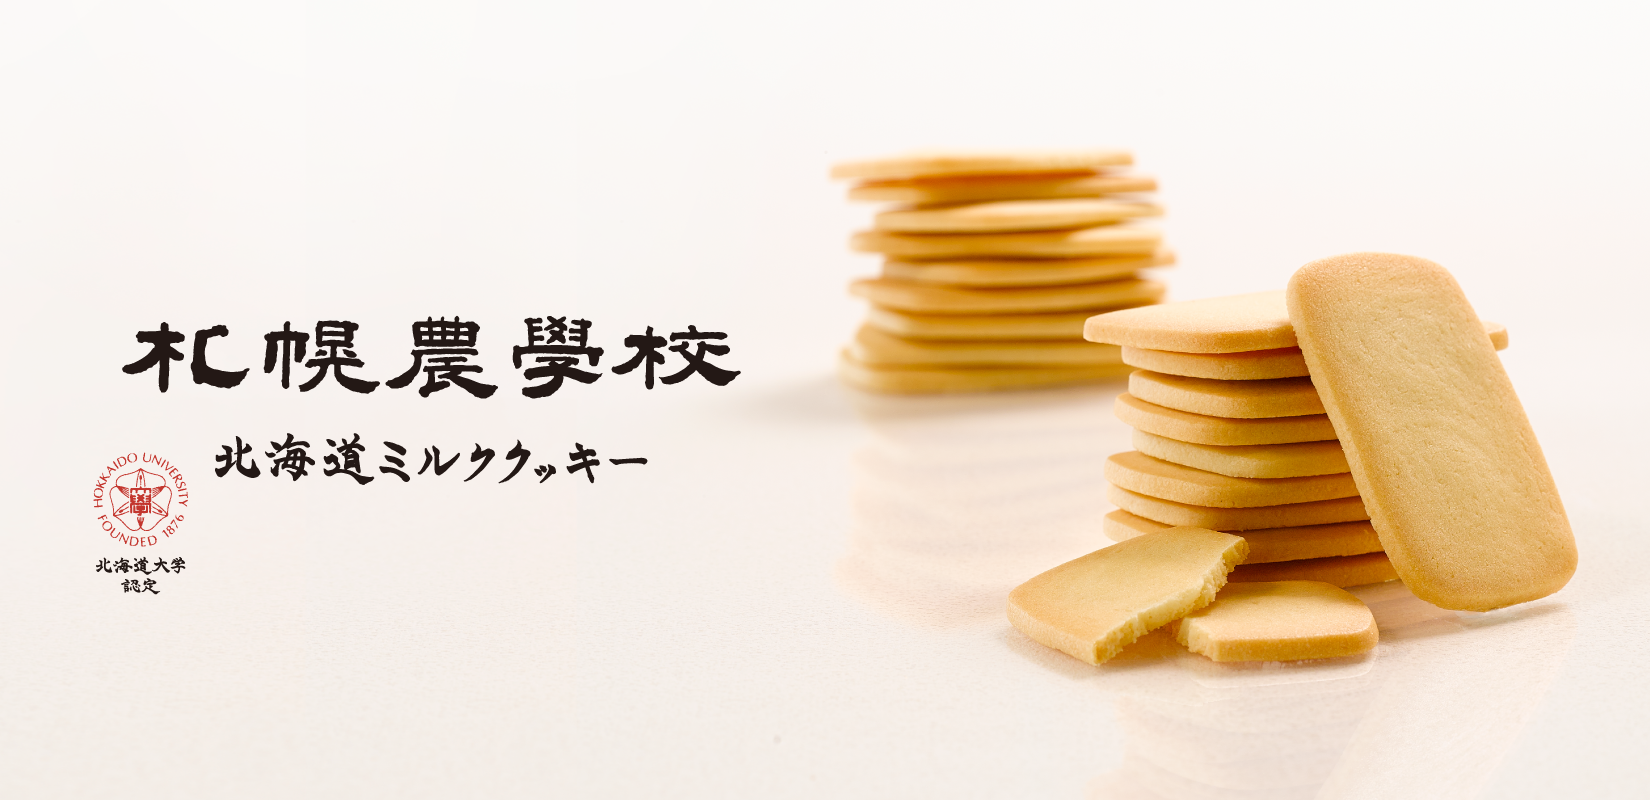 札幌農学校 北海道ミルククッキー - 札幌の洋菓子スイーツ きのとやオンラインショップ